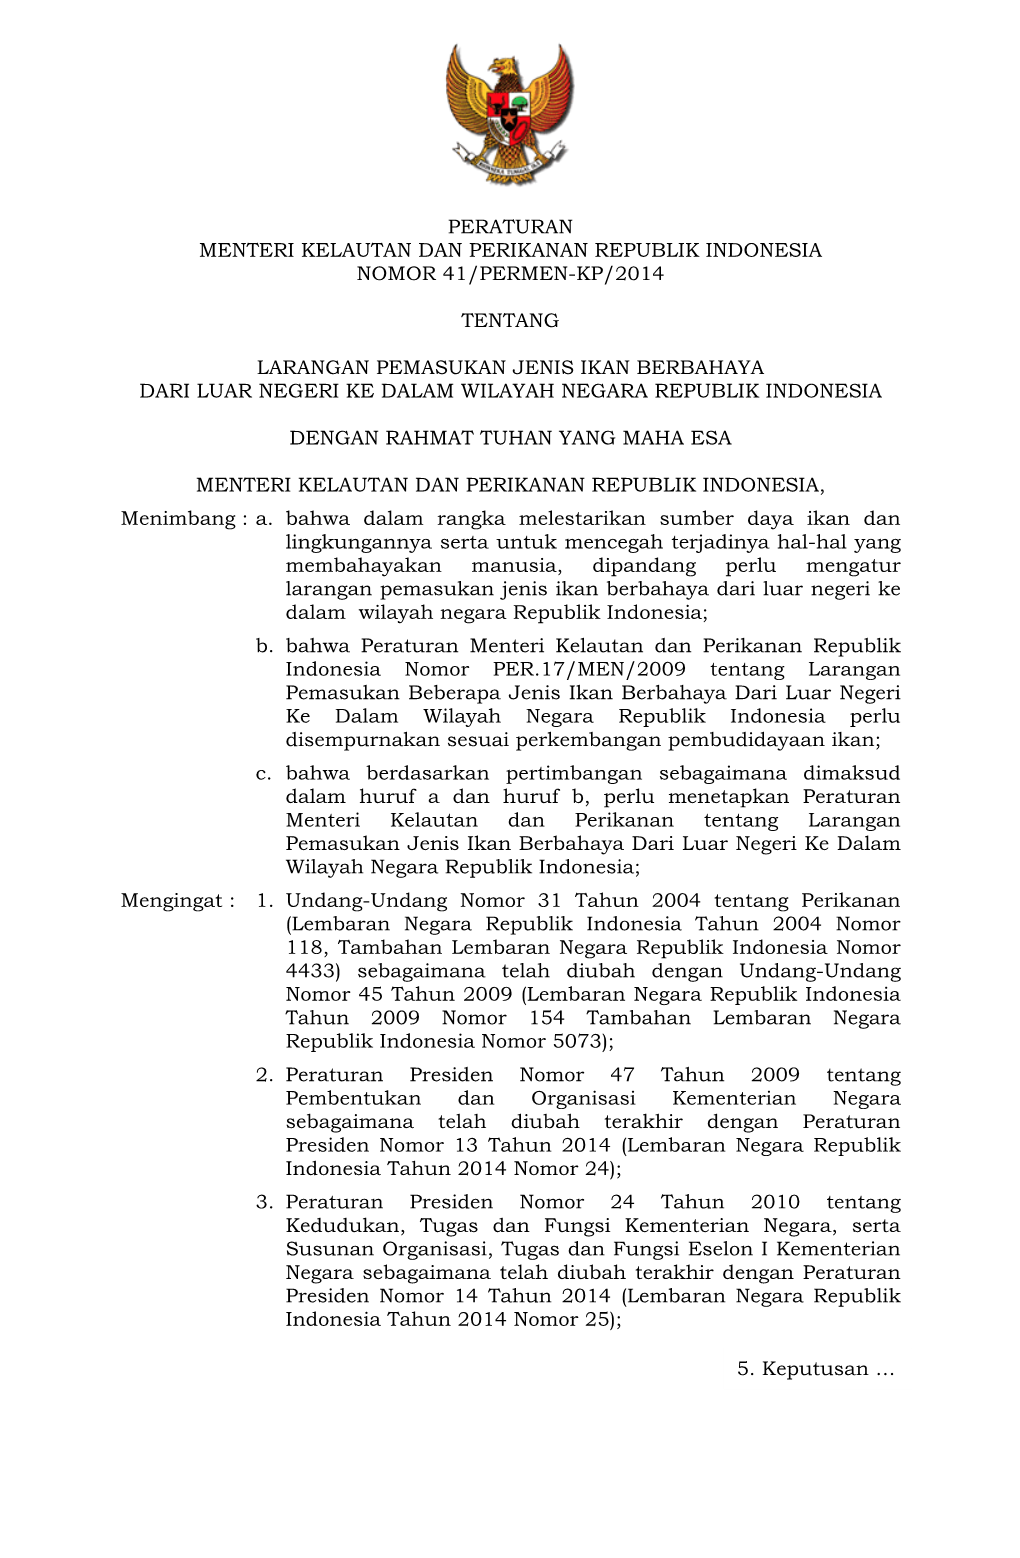 Peraturan Menteri Kelautan Dan Perikanan Republik Indonesia Nomor 41/Permen-Kp/2014